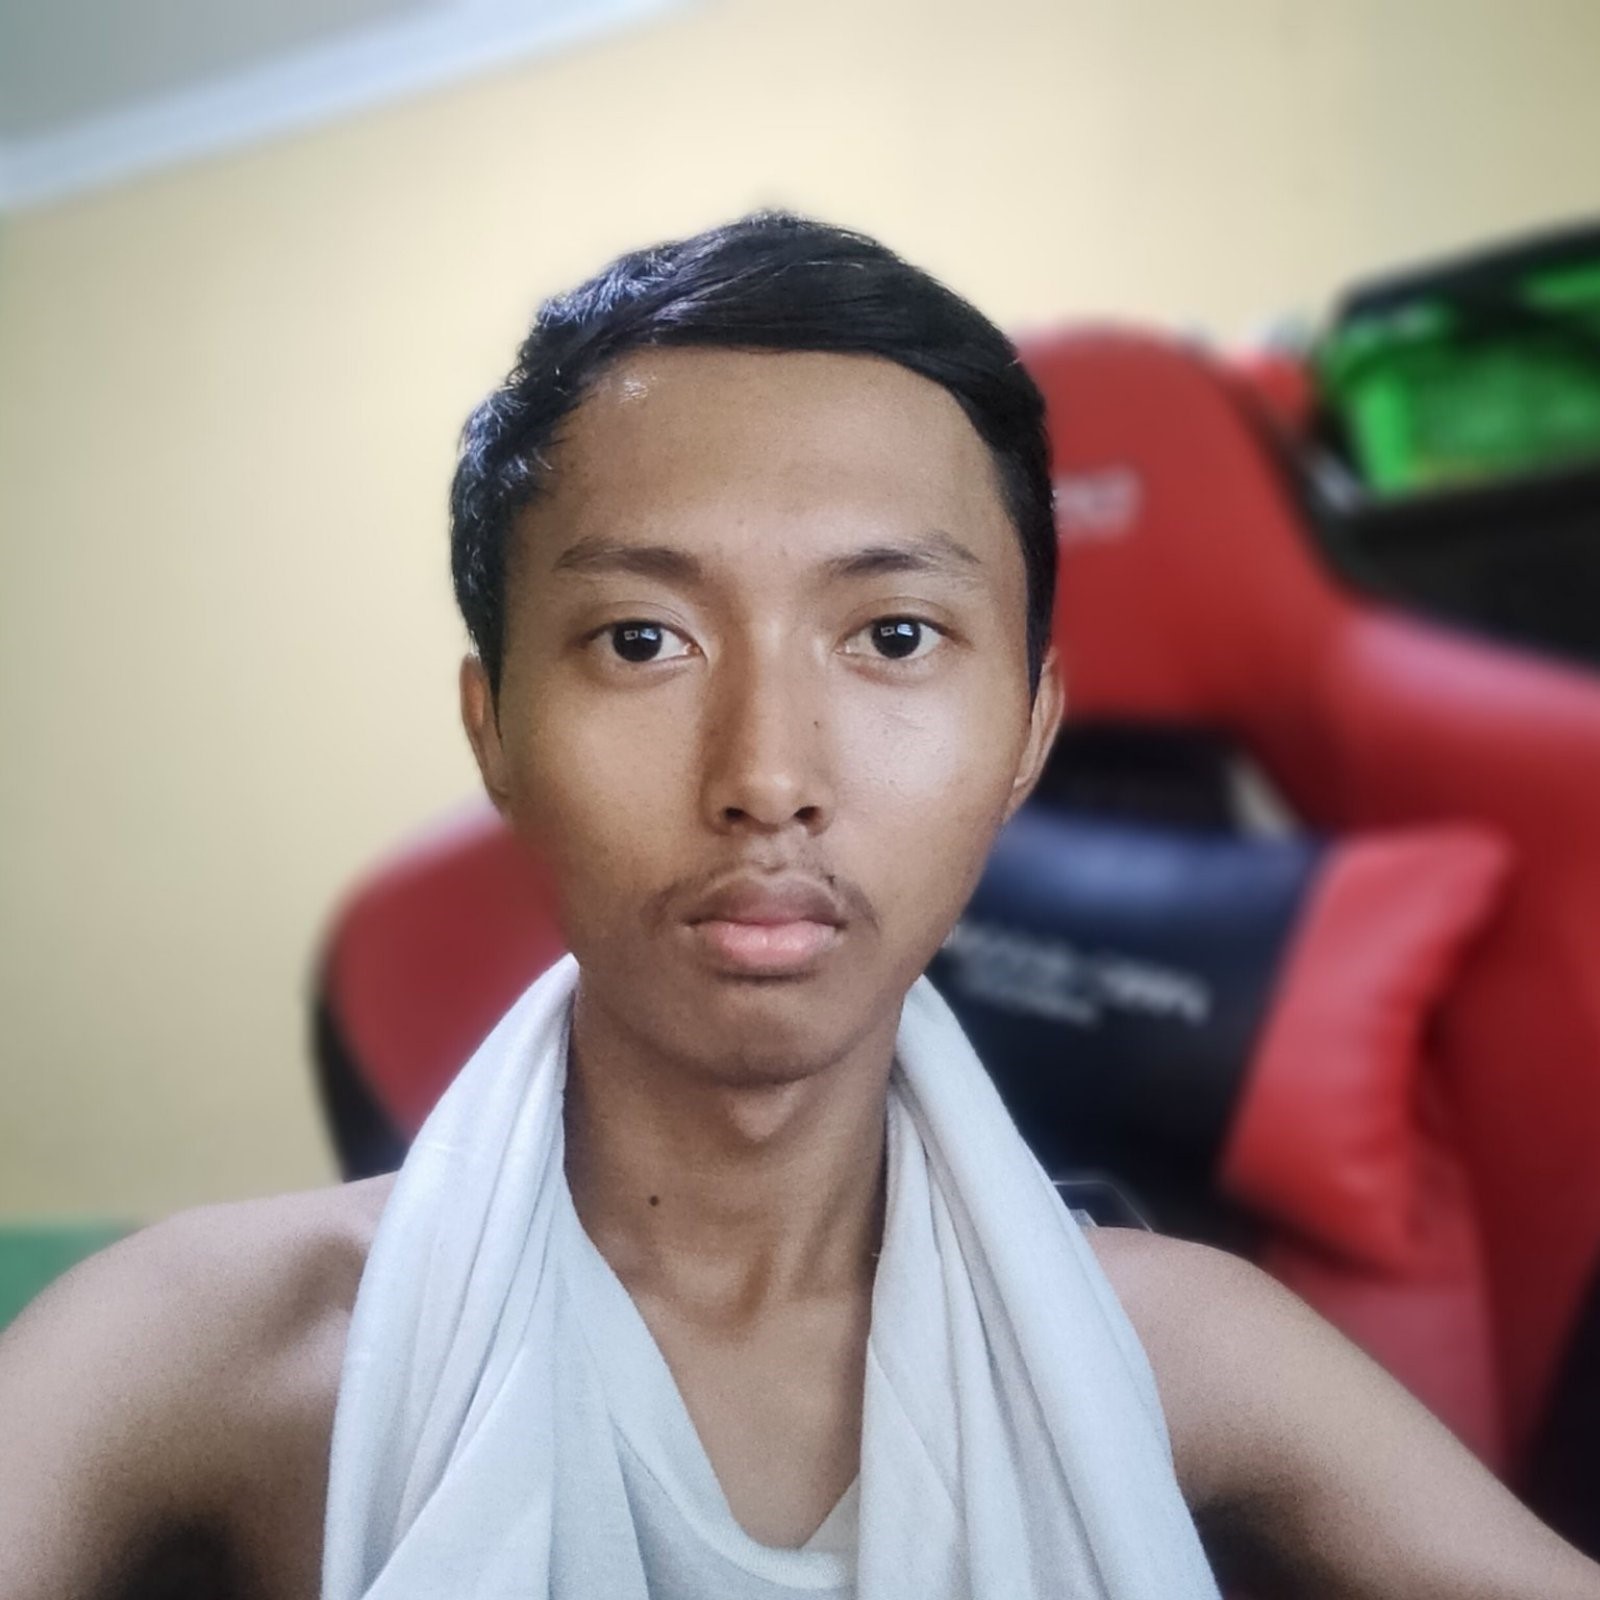 دانشجوی اندونزیایی با سلفی های خود میلیونر شد!